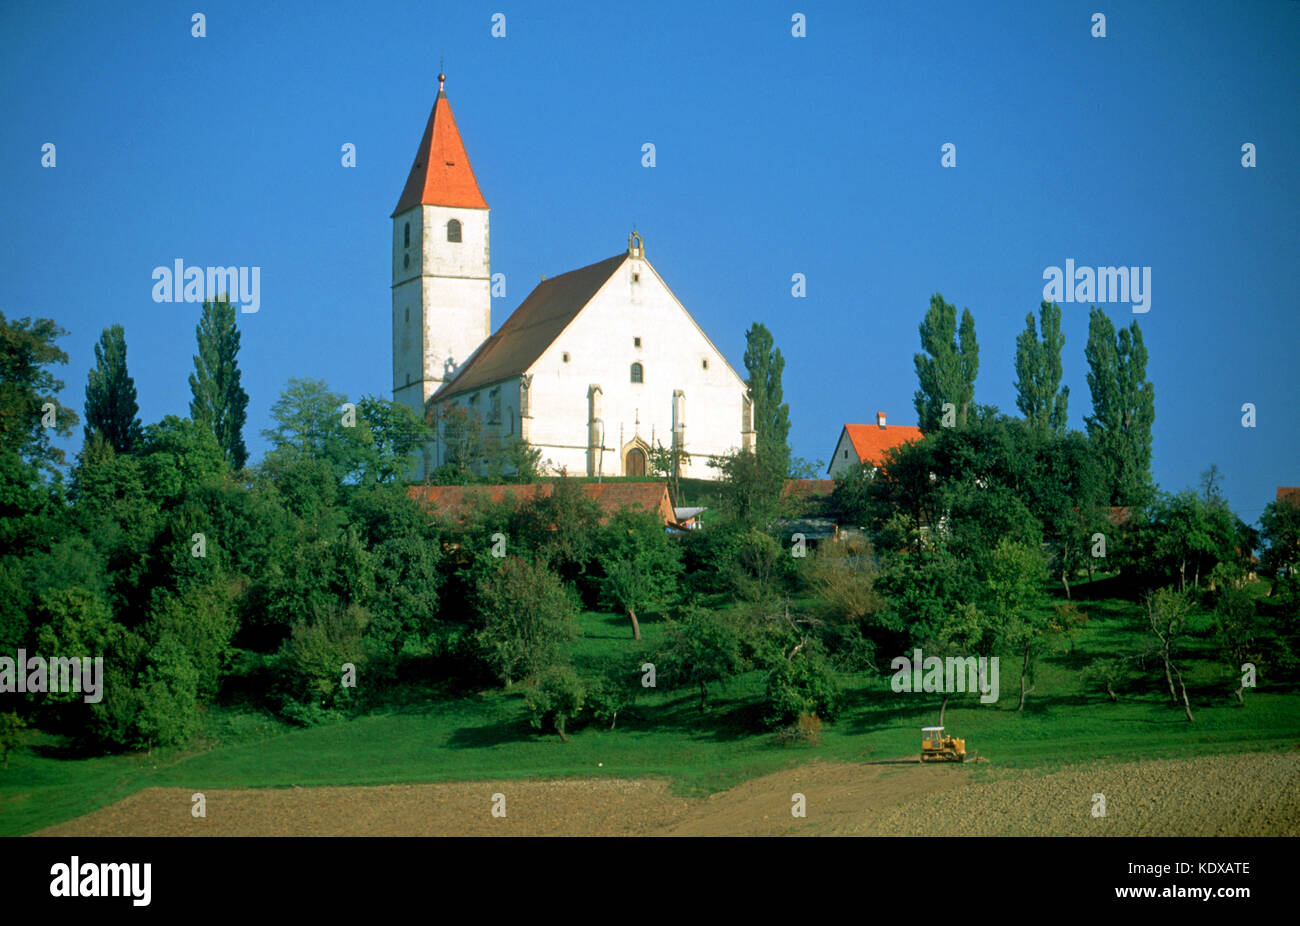 Slowenien, Benedikt, Kirche von Benedikt östlich von Maribor Banque D'Images